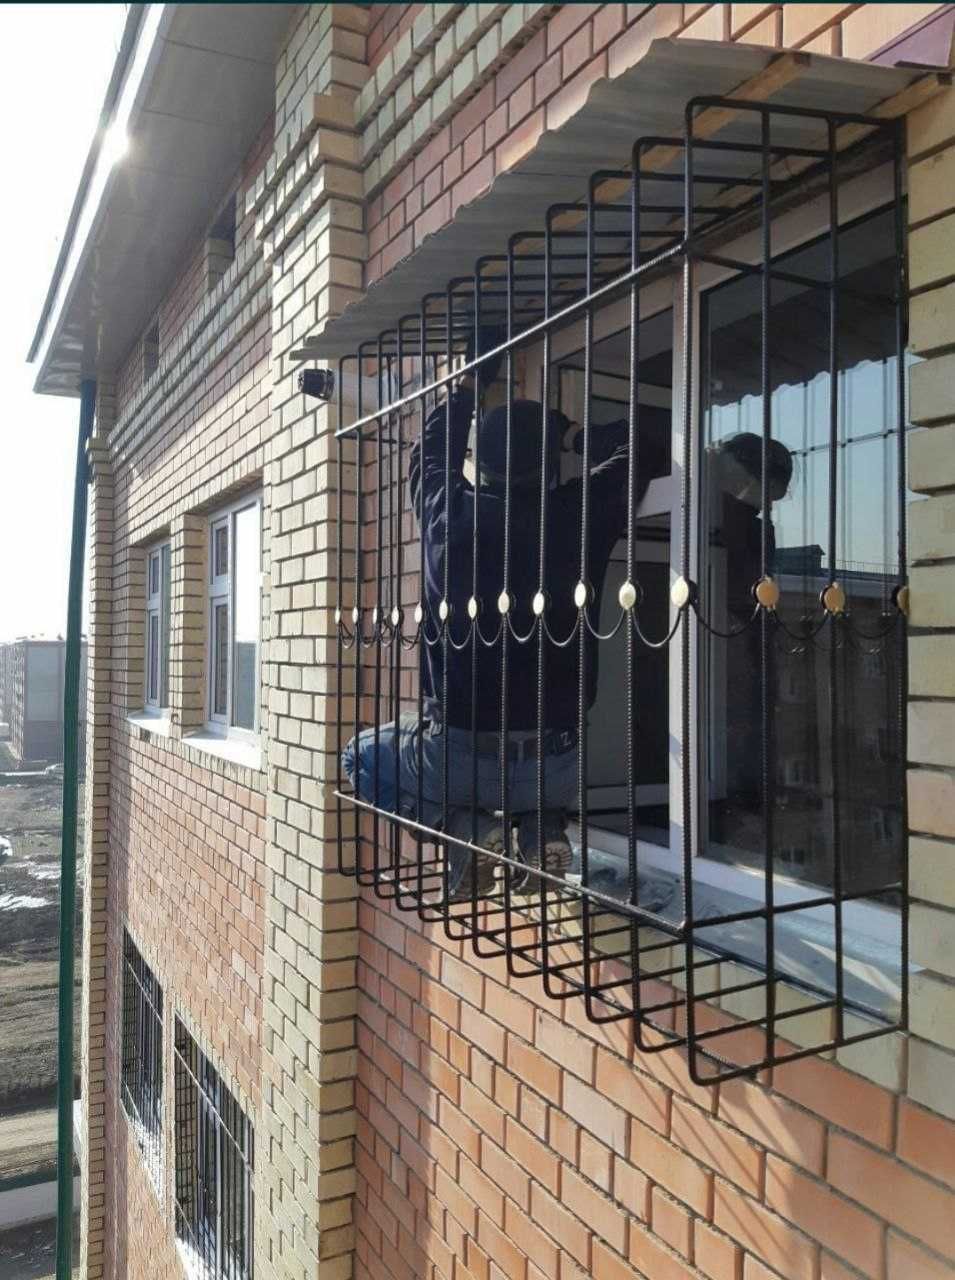 РЕШЁТКИ на окна НЕДОРОГО  panjara Козырёк навес перила ограда ковка